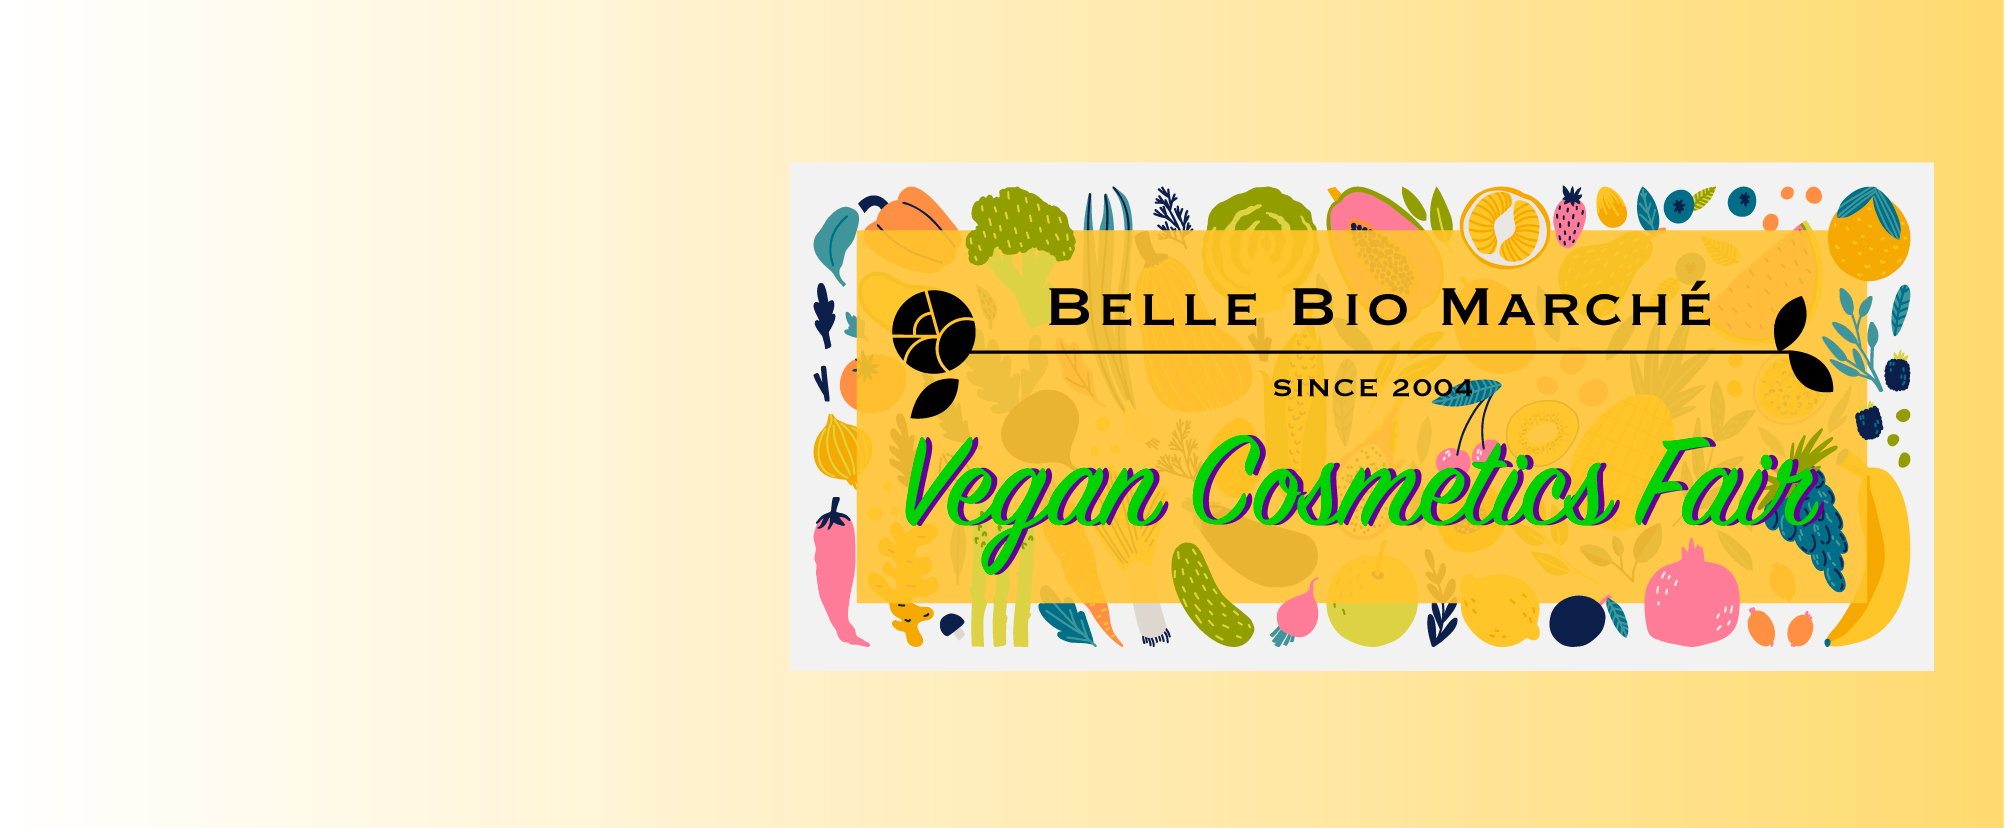 Belle Bio Marche Vegan Cosmetics Fair